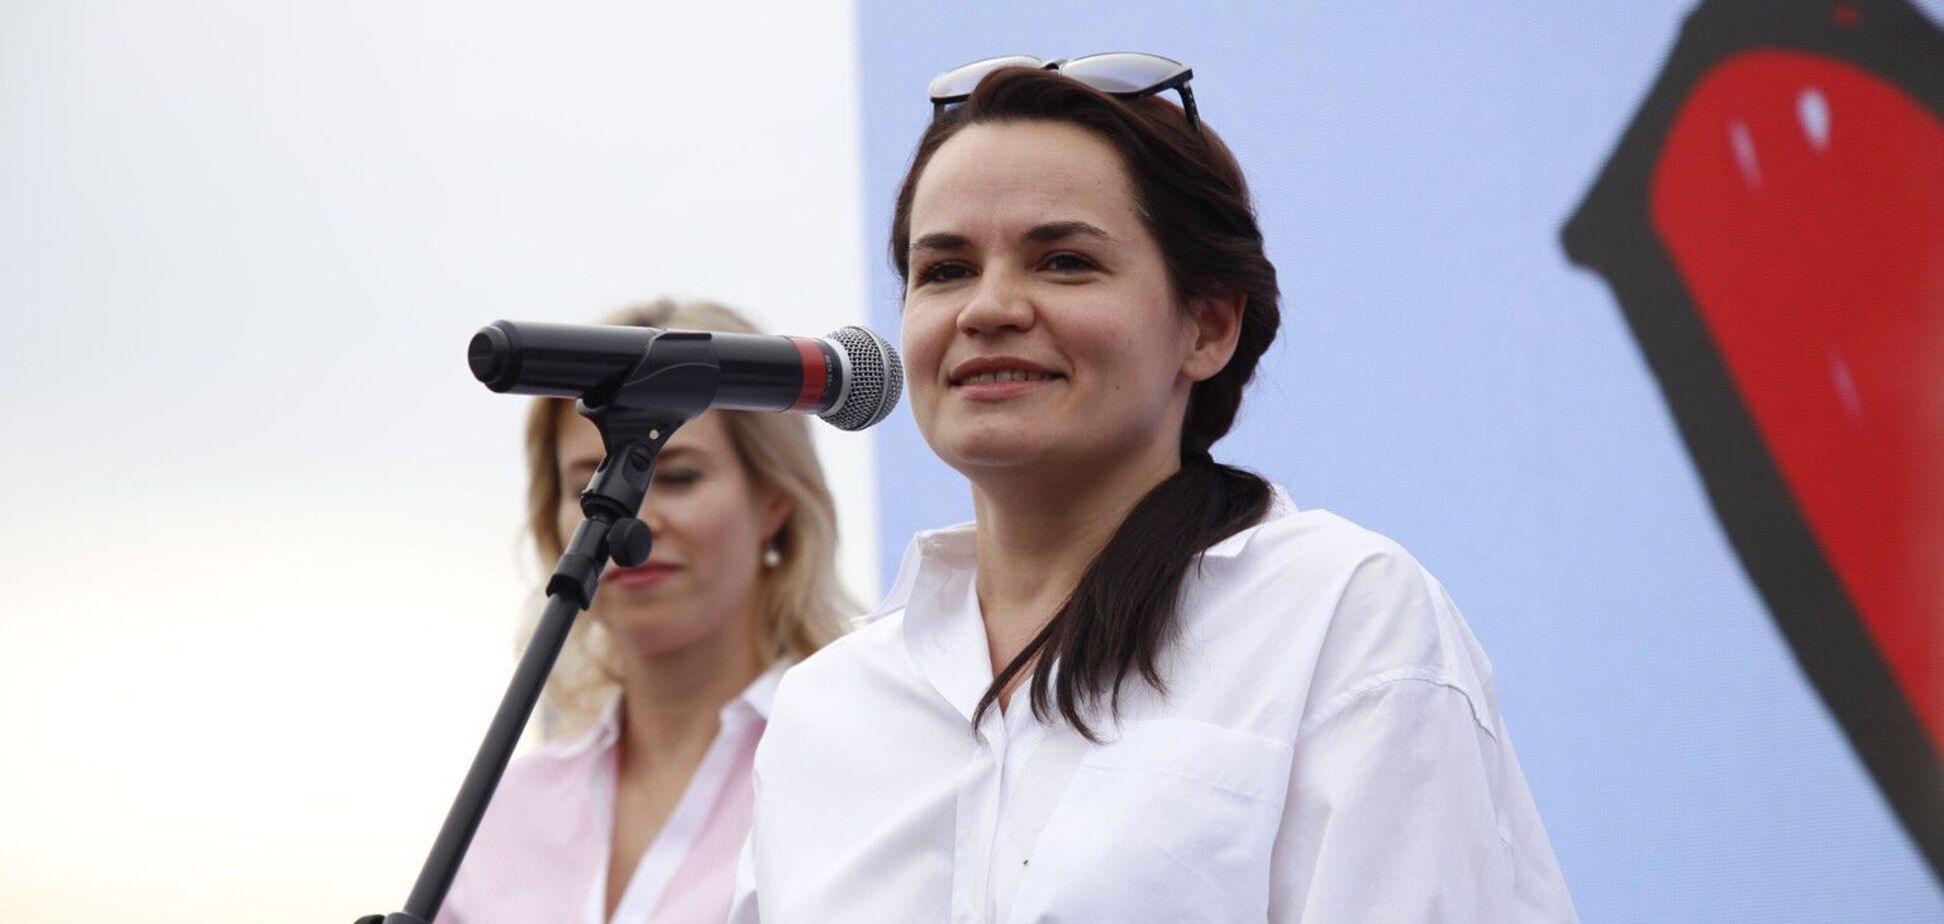 У Тихановської закликали не застосовувати насильство проти громадян. фото ex-press.by